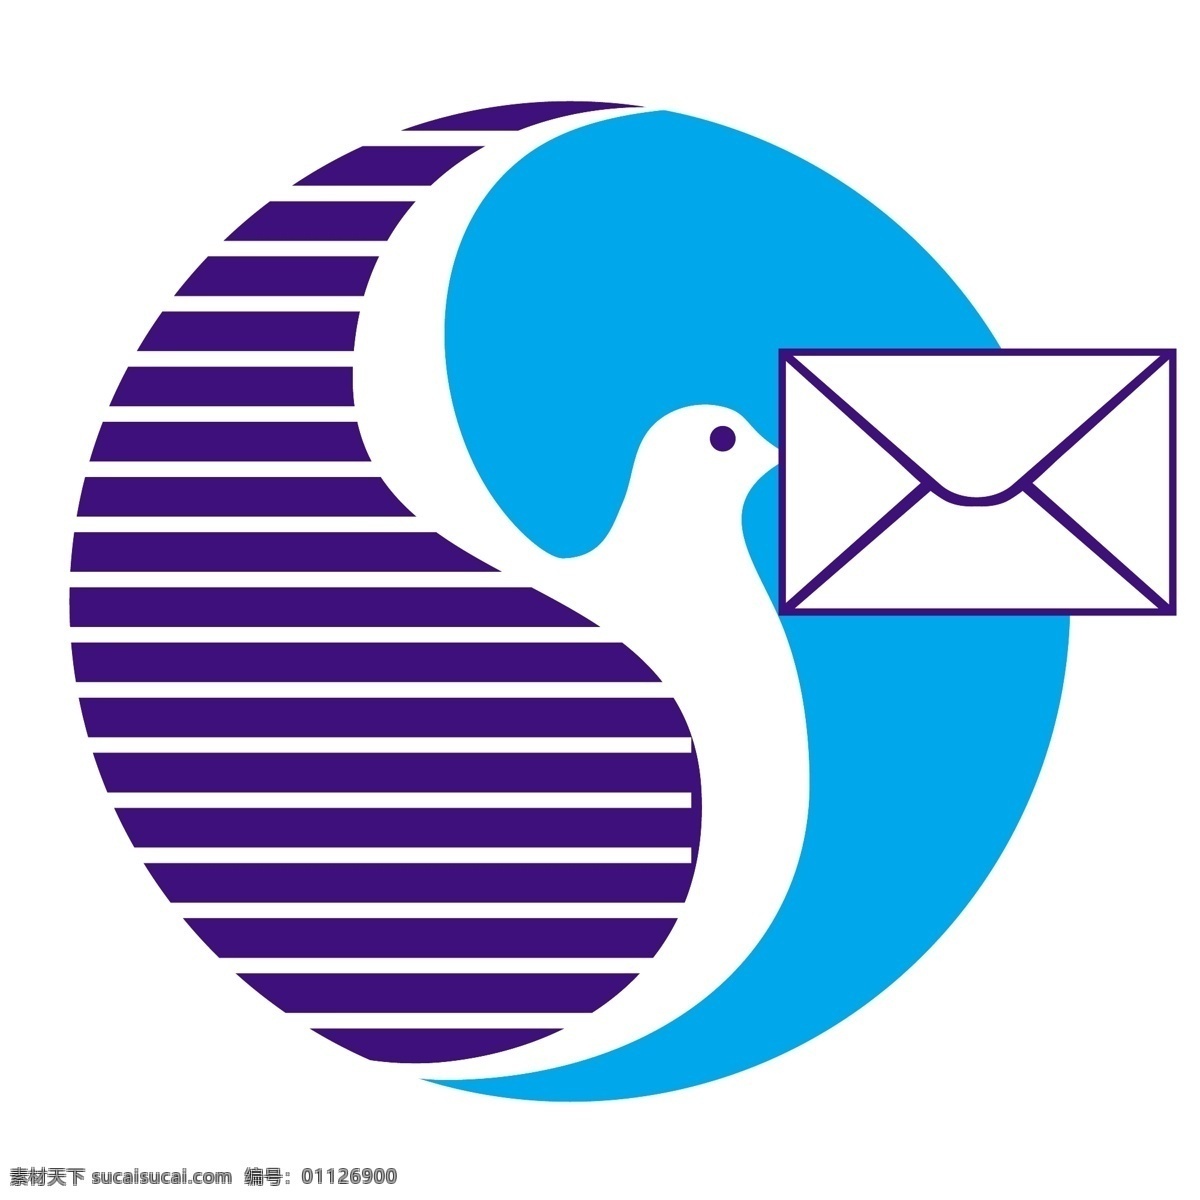 球形 信鸽 logo 鸽子 logo设计 标签 标志 蓝色 白鸽 送信 信件 和平鸽 和平 白色